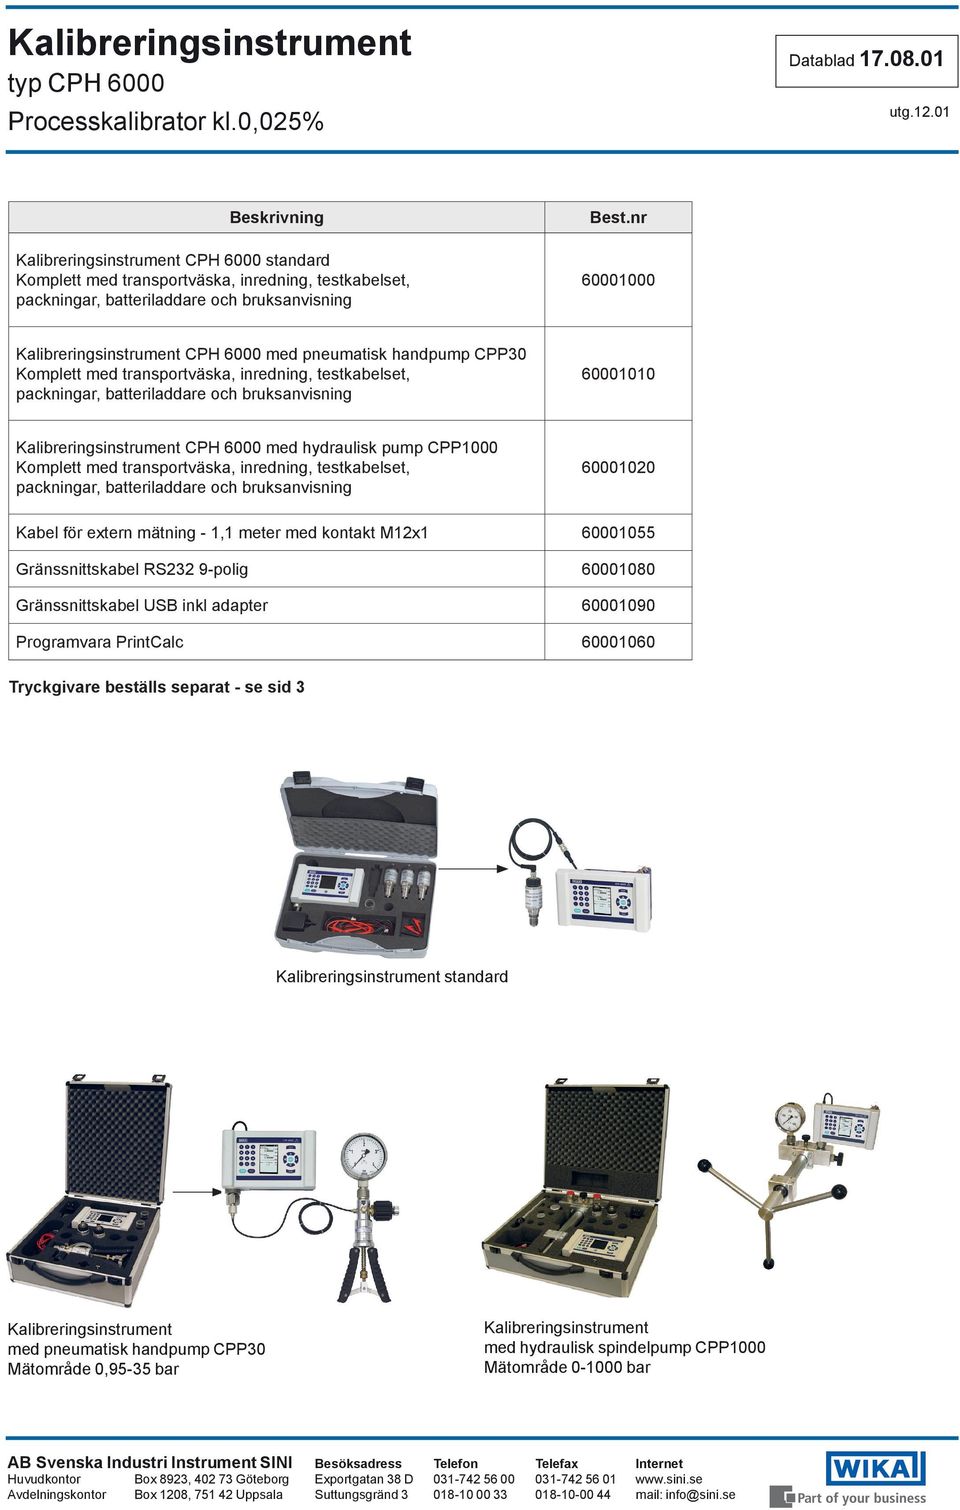 Kalibreringsinstrument CPH 6000 med hydraulisk pump CPP1000 Komplett med transportväska, inredning, testkabelset, packningar, batteriladdare och bruksanvisning 60001020 Kabel för extern mätning - 1,1